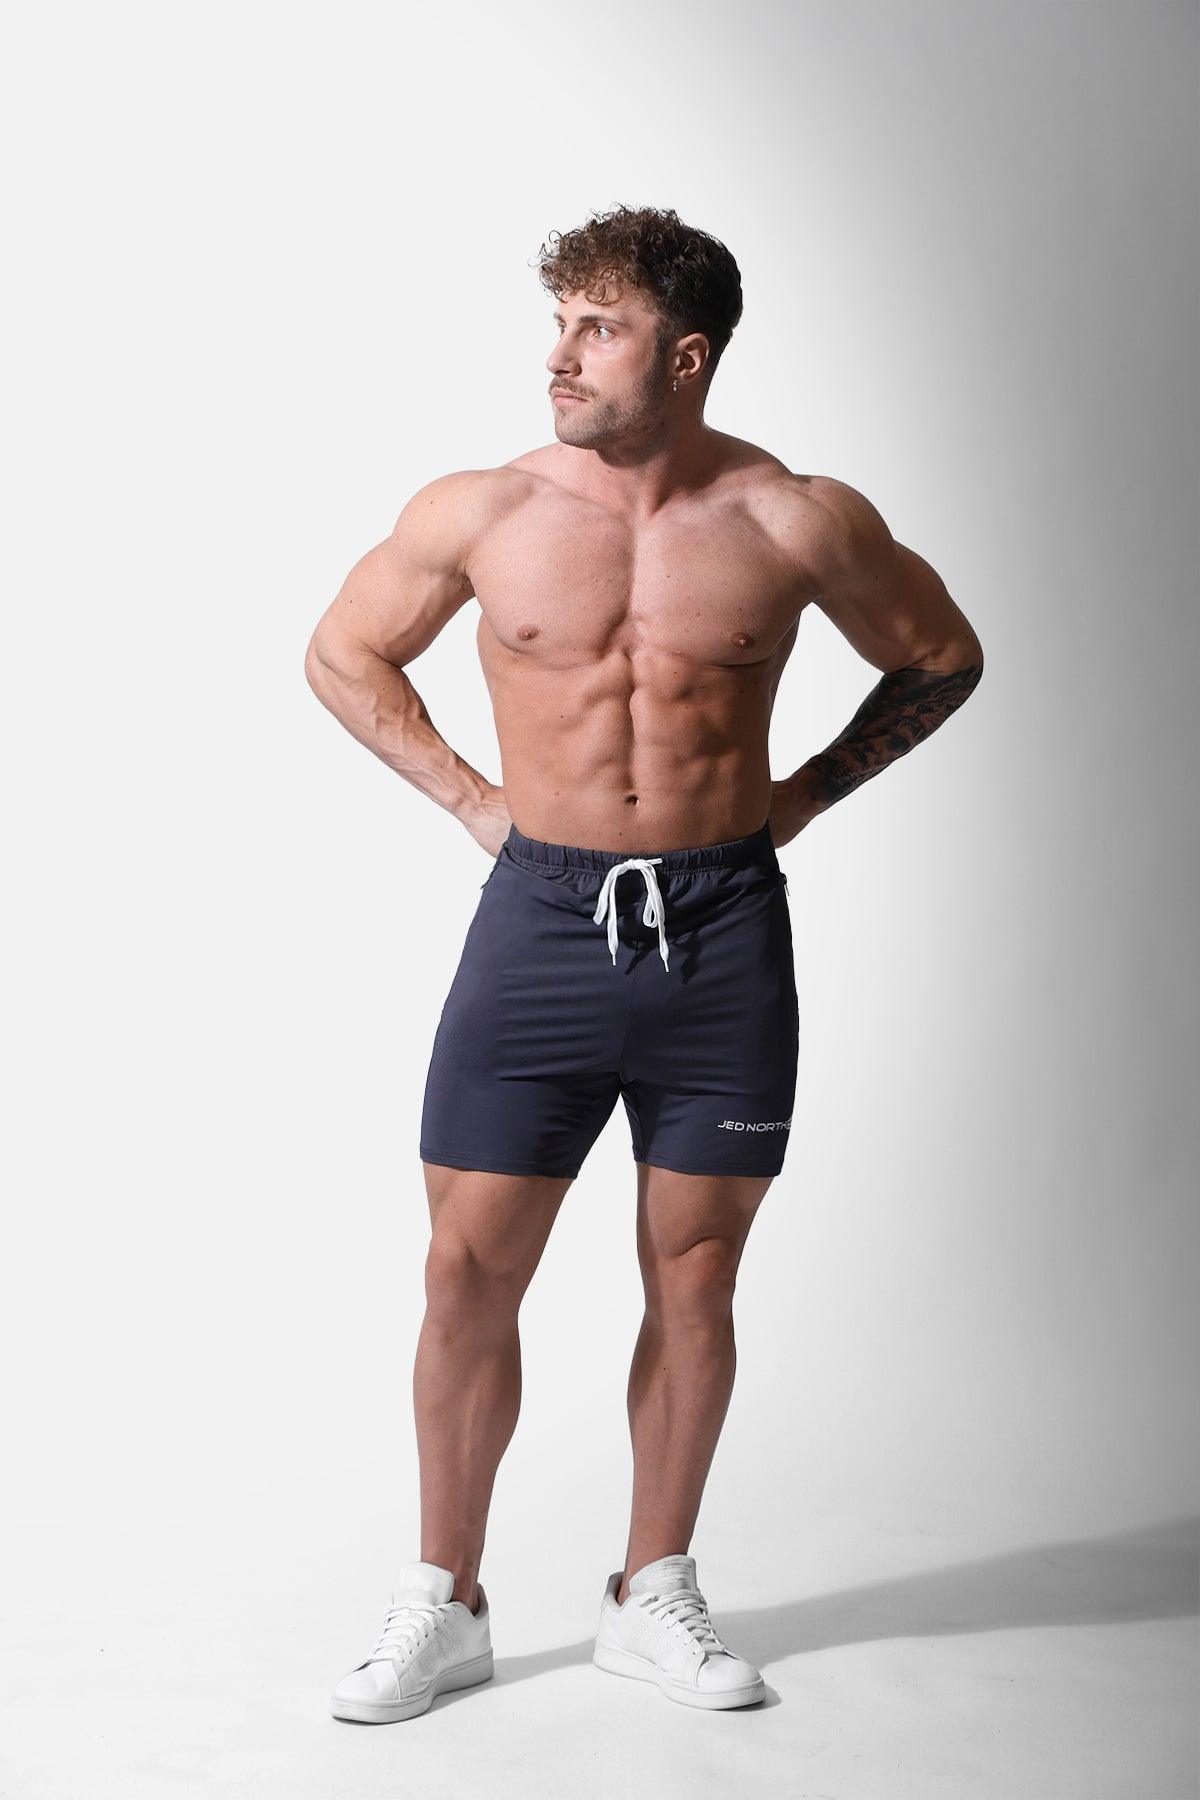 Agile Plus 5.5'' Bodybuilding Shorts w Zipper Pockets - Gray - Jed North